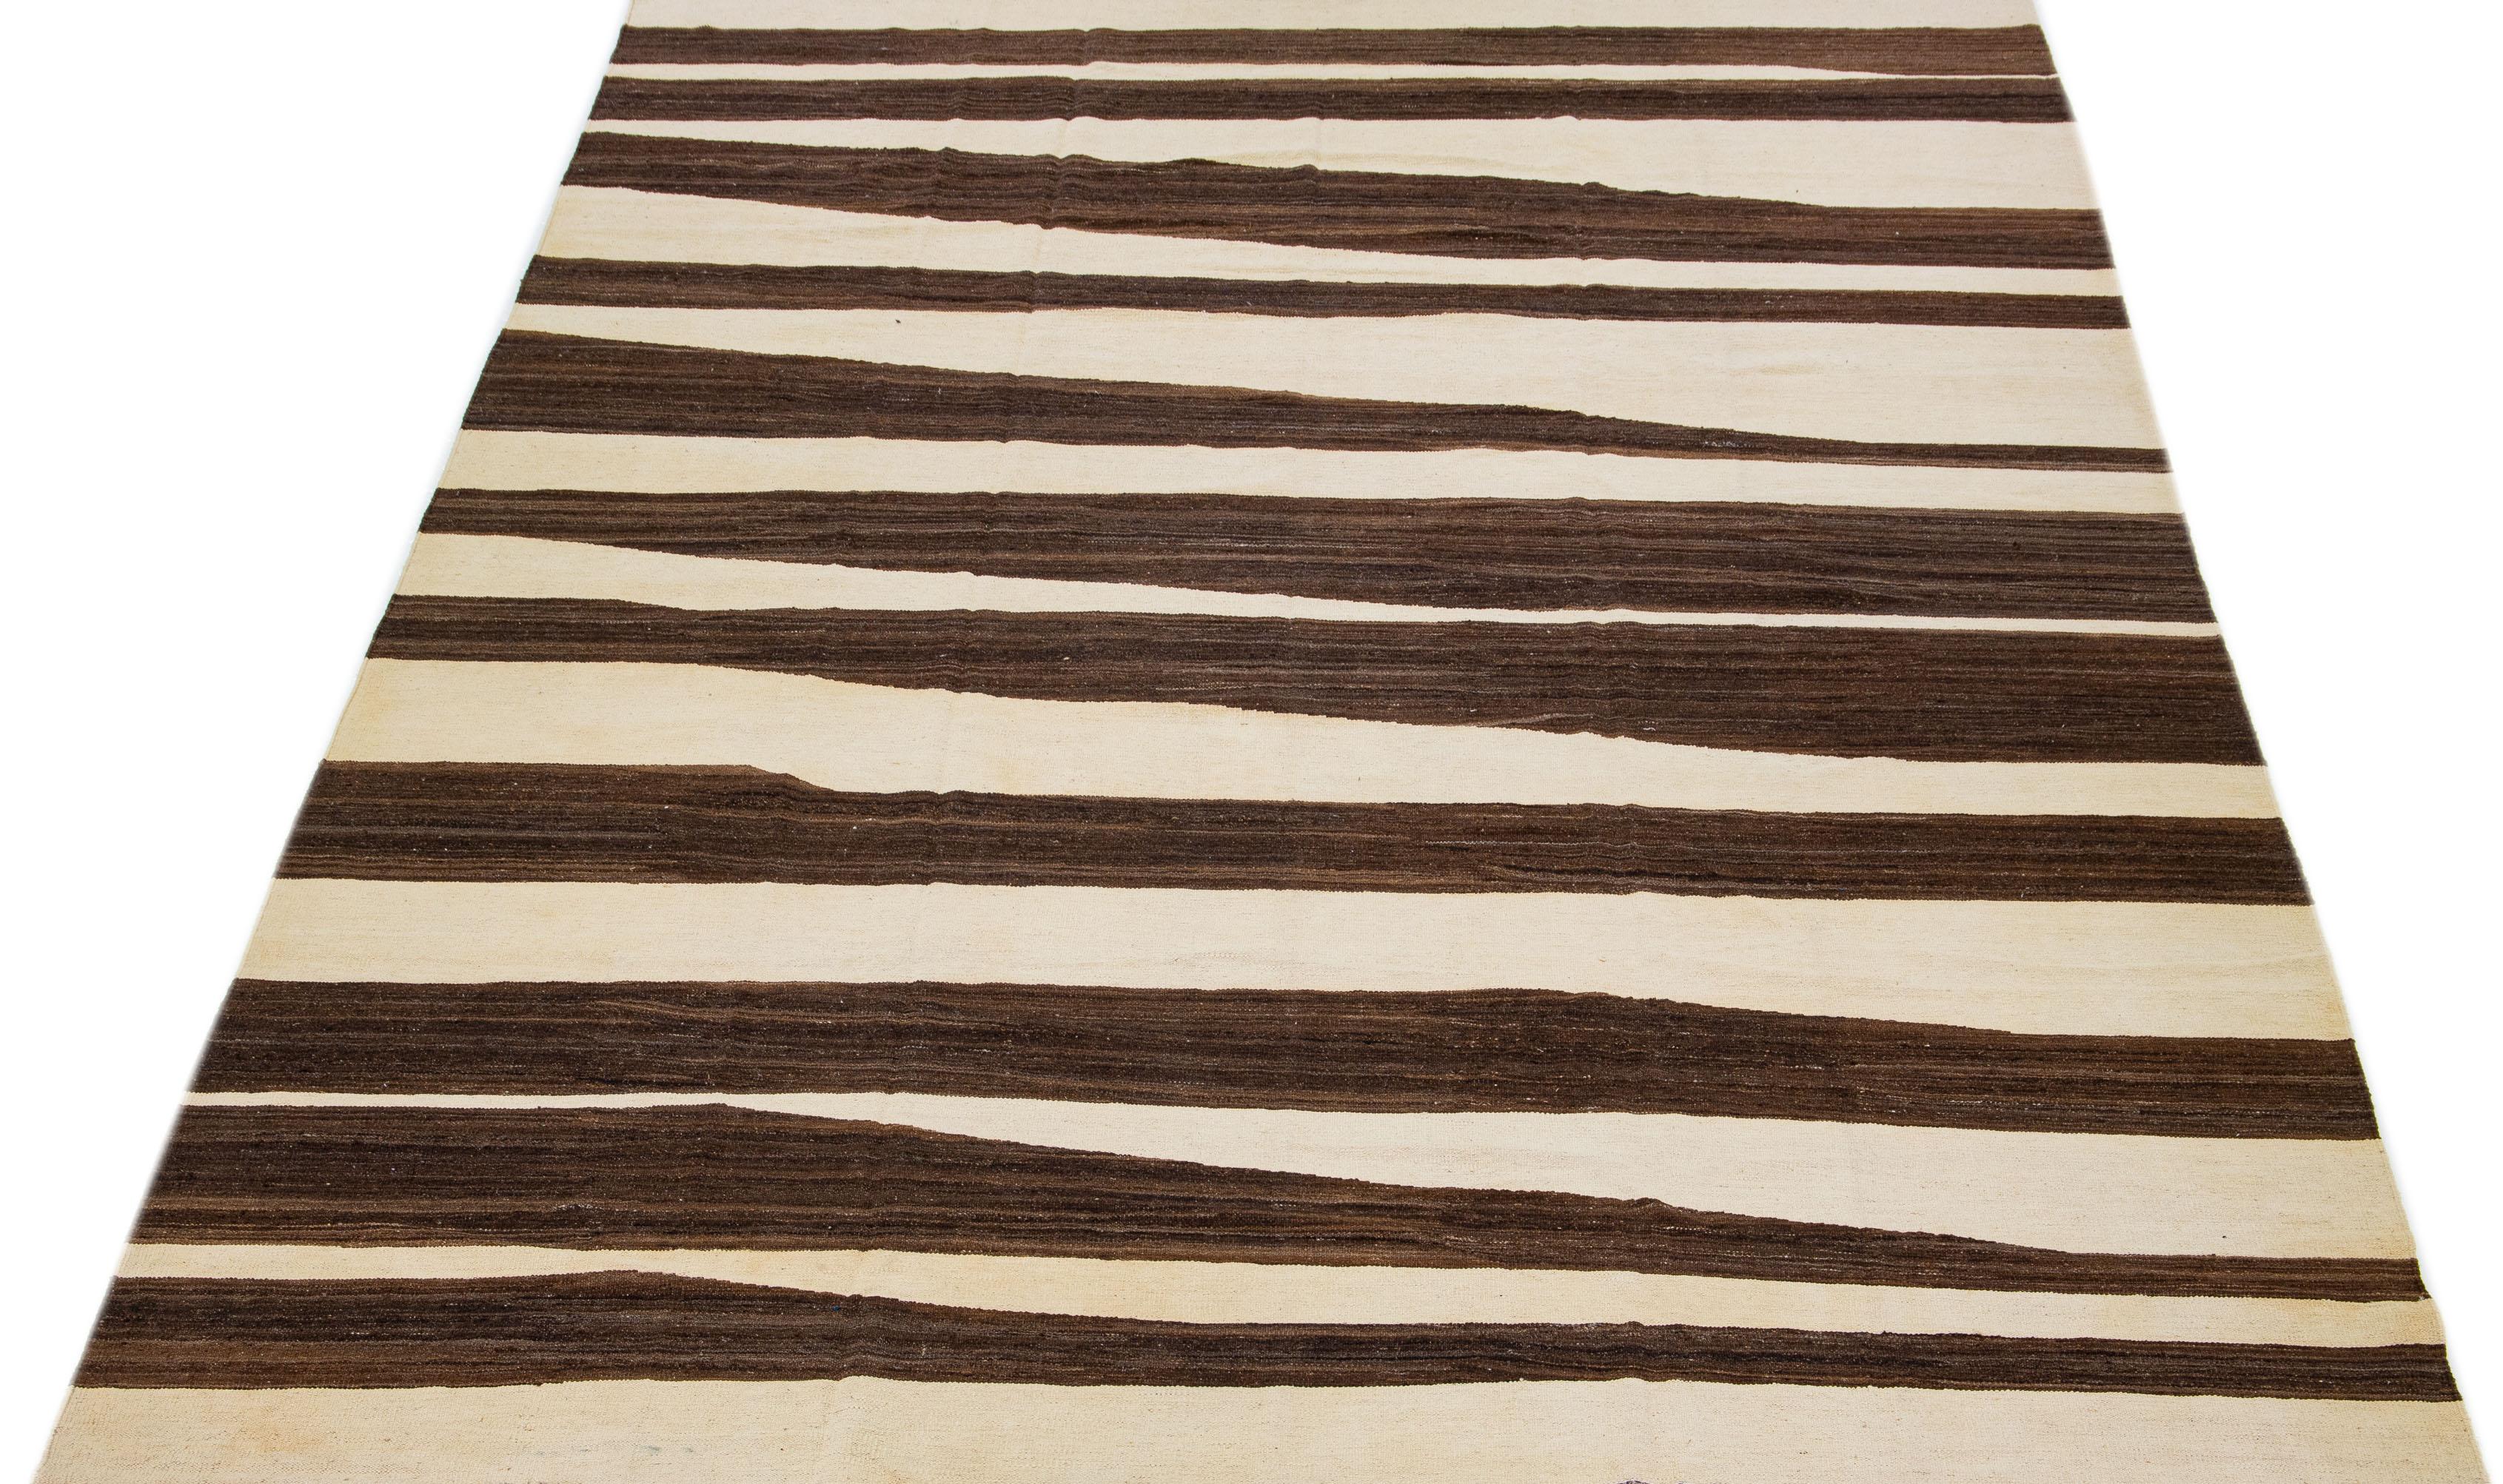 Le tapis Rug & Kilim, méticuleusement confectionné, arbore un design contemporain, avec un champ beige dominant accentué par des motifs géométriques abstraits dans les tons de brun.

Ce tapis mesure 10' x 14'.

